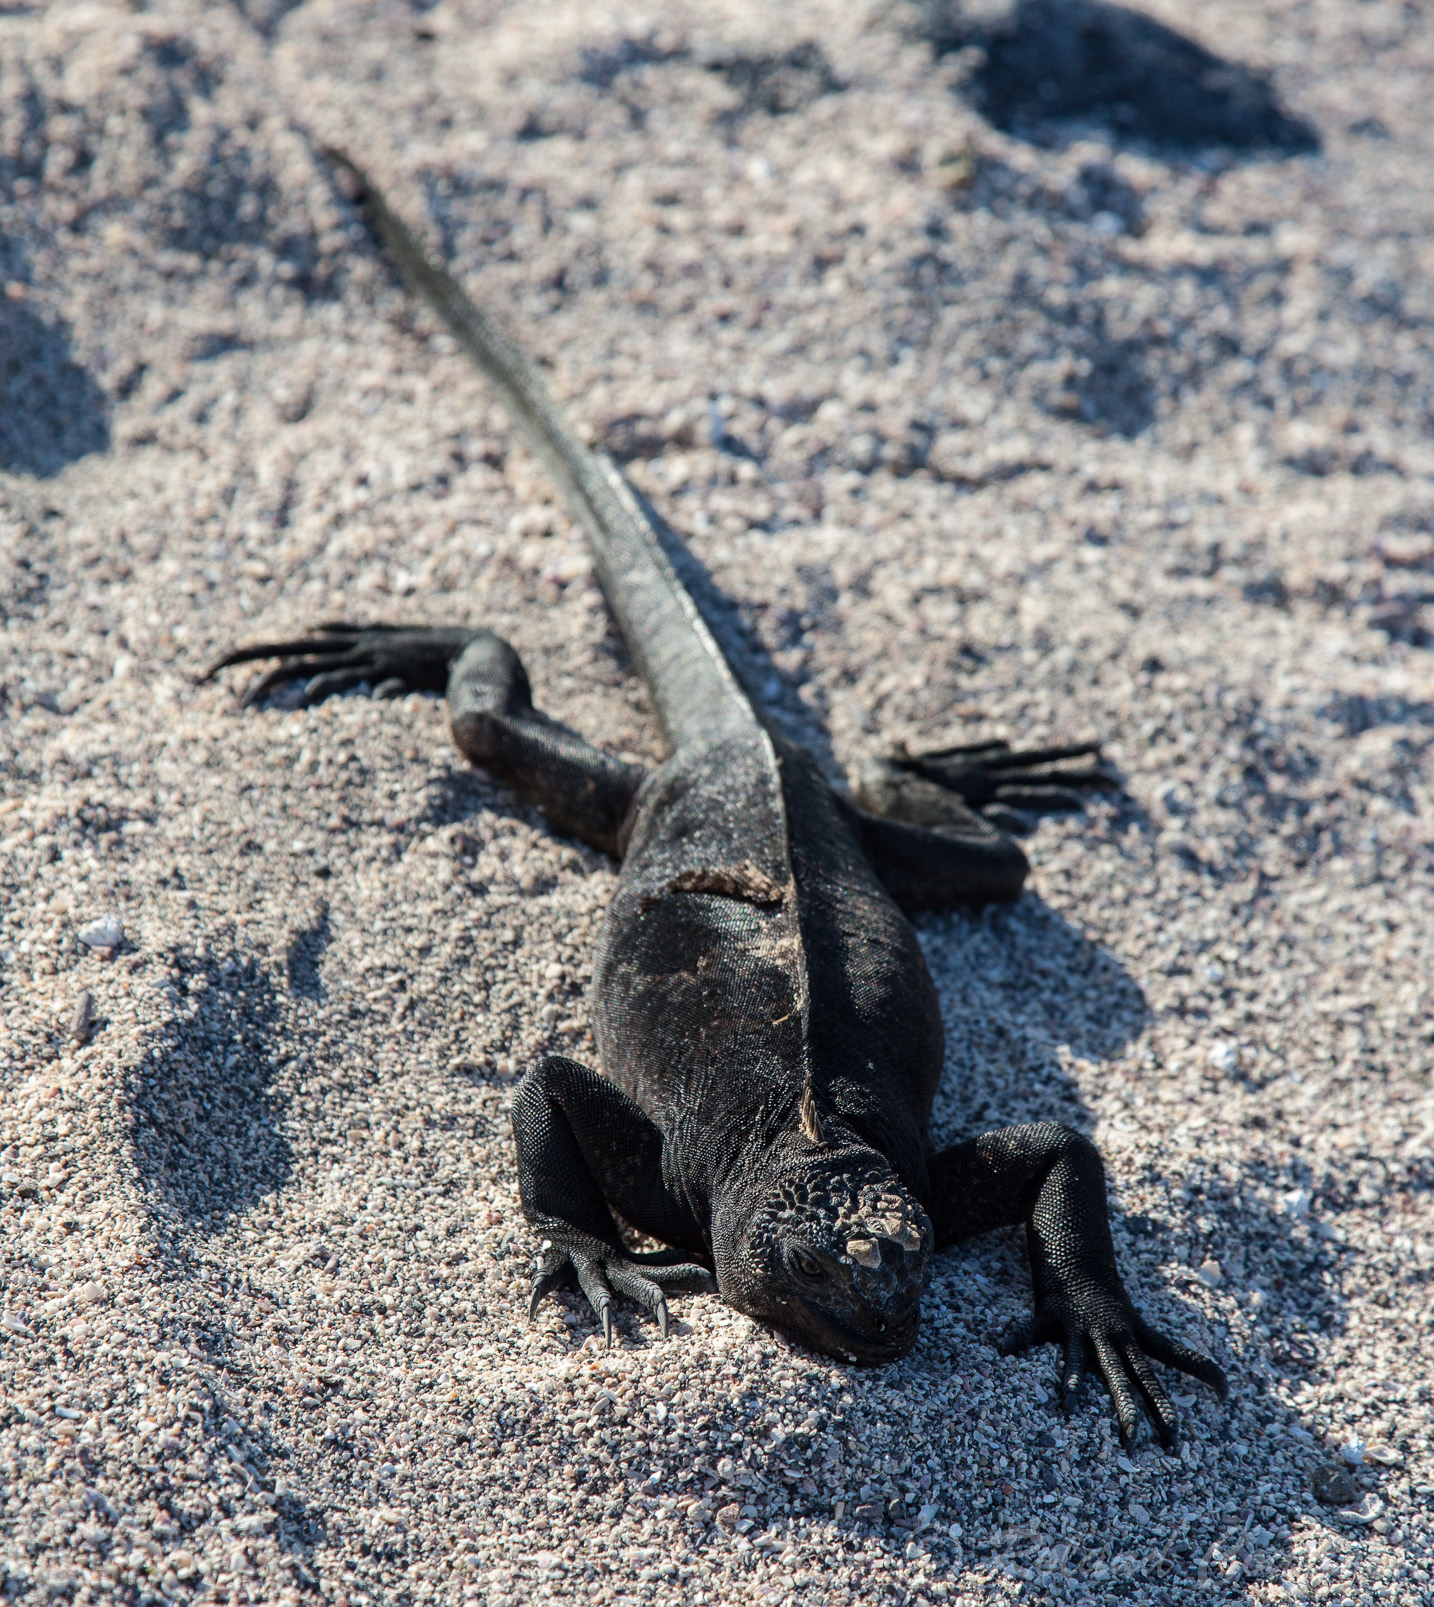 Et encore un (dernier) iguane marin des Galapagos.